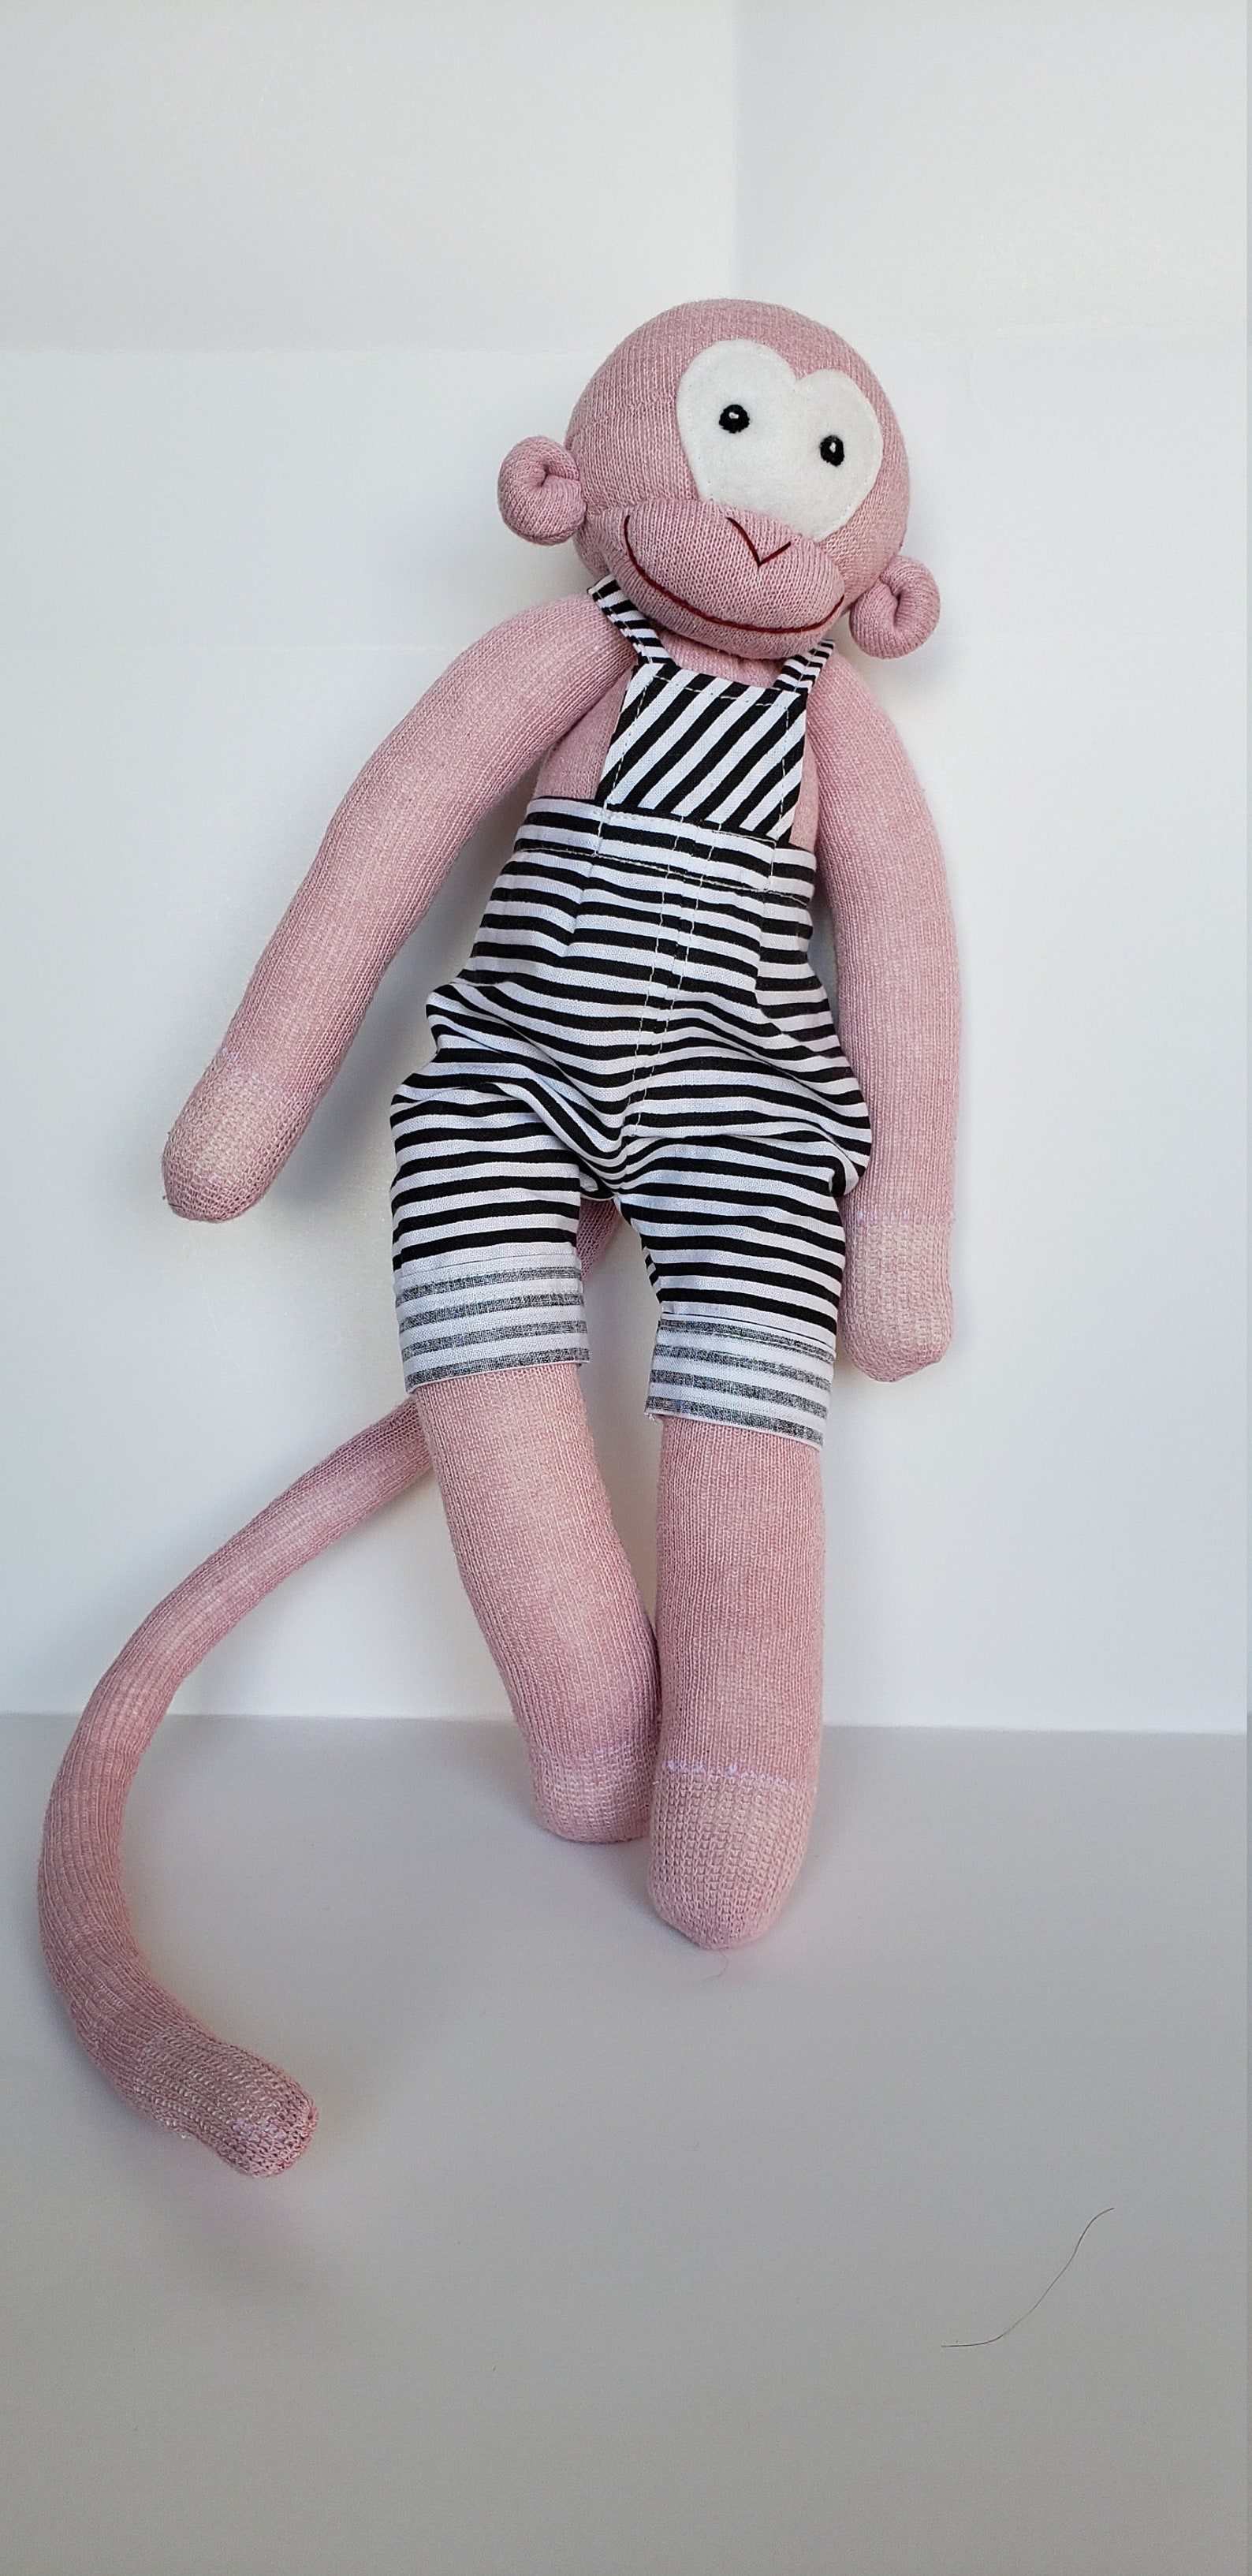 Sock monkey in jumper pants stuffed animal | Etsy